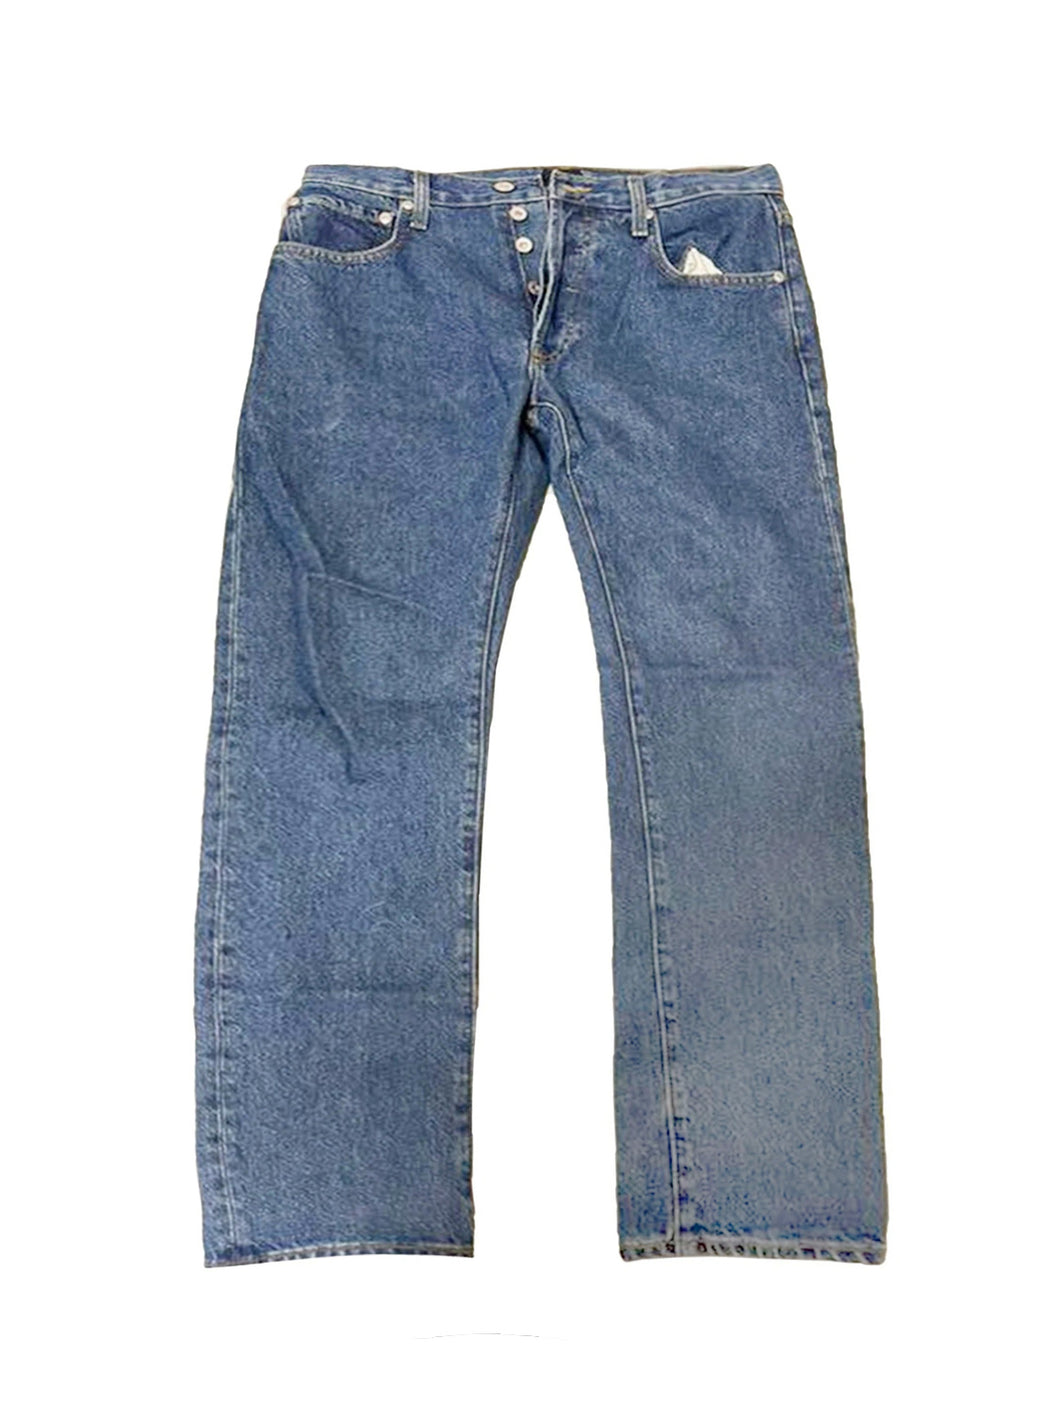 Stussy Rare Medium Blue Denim Jeans